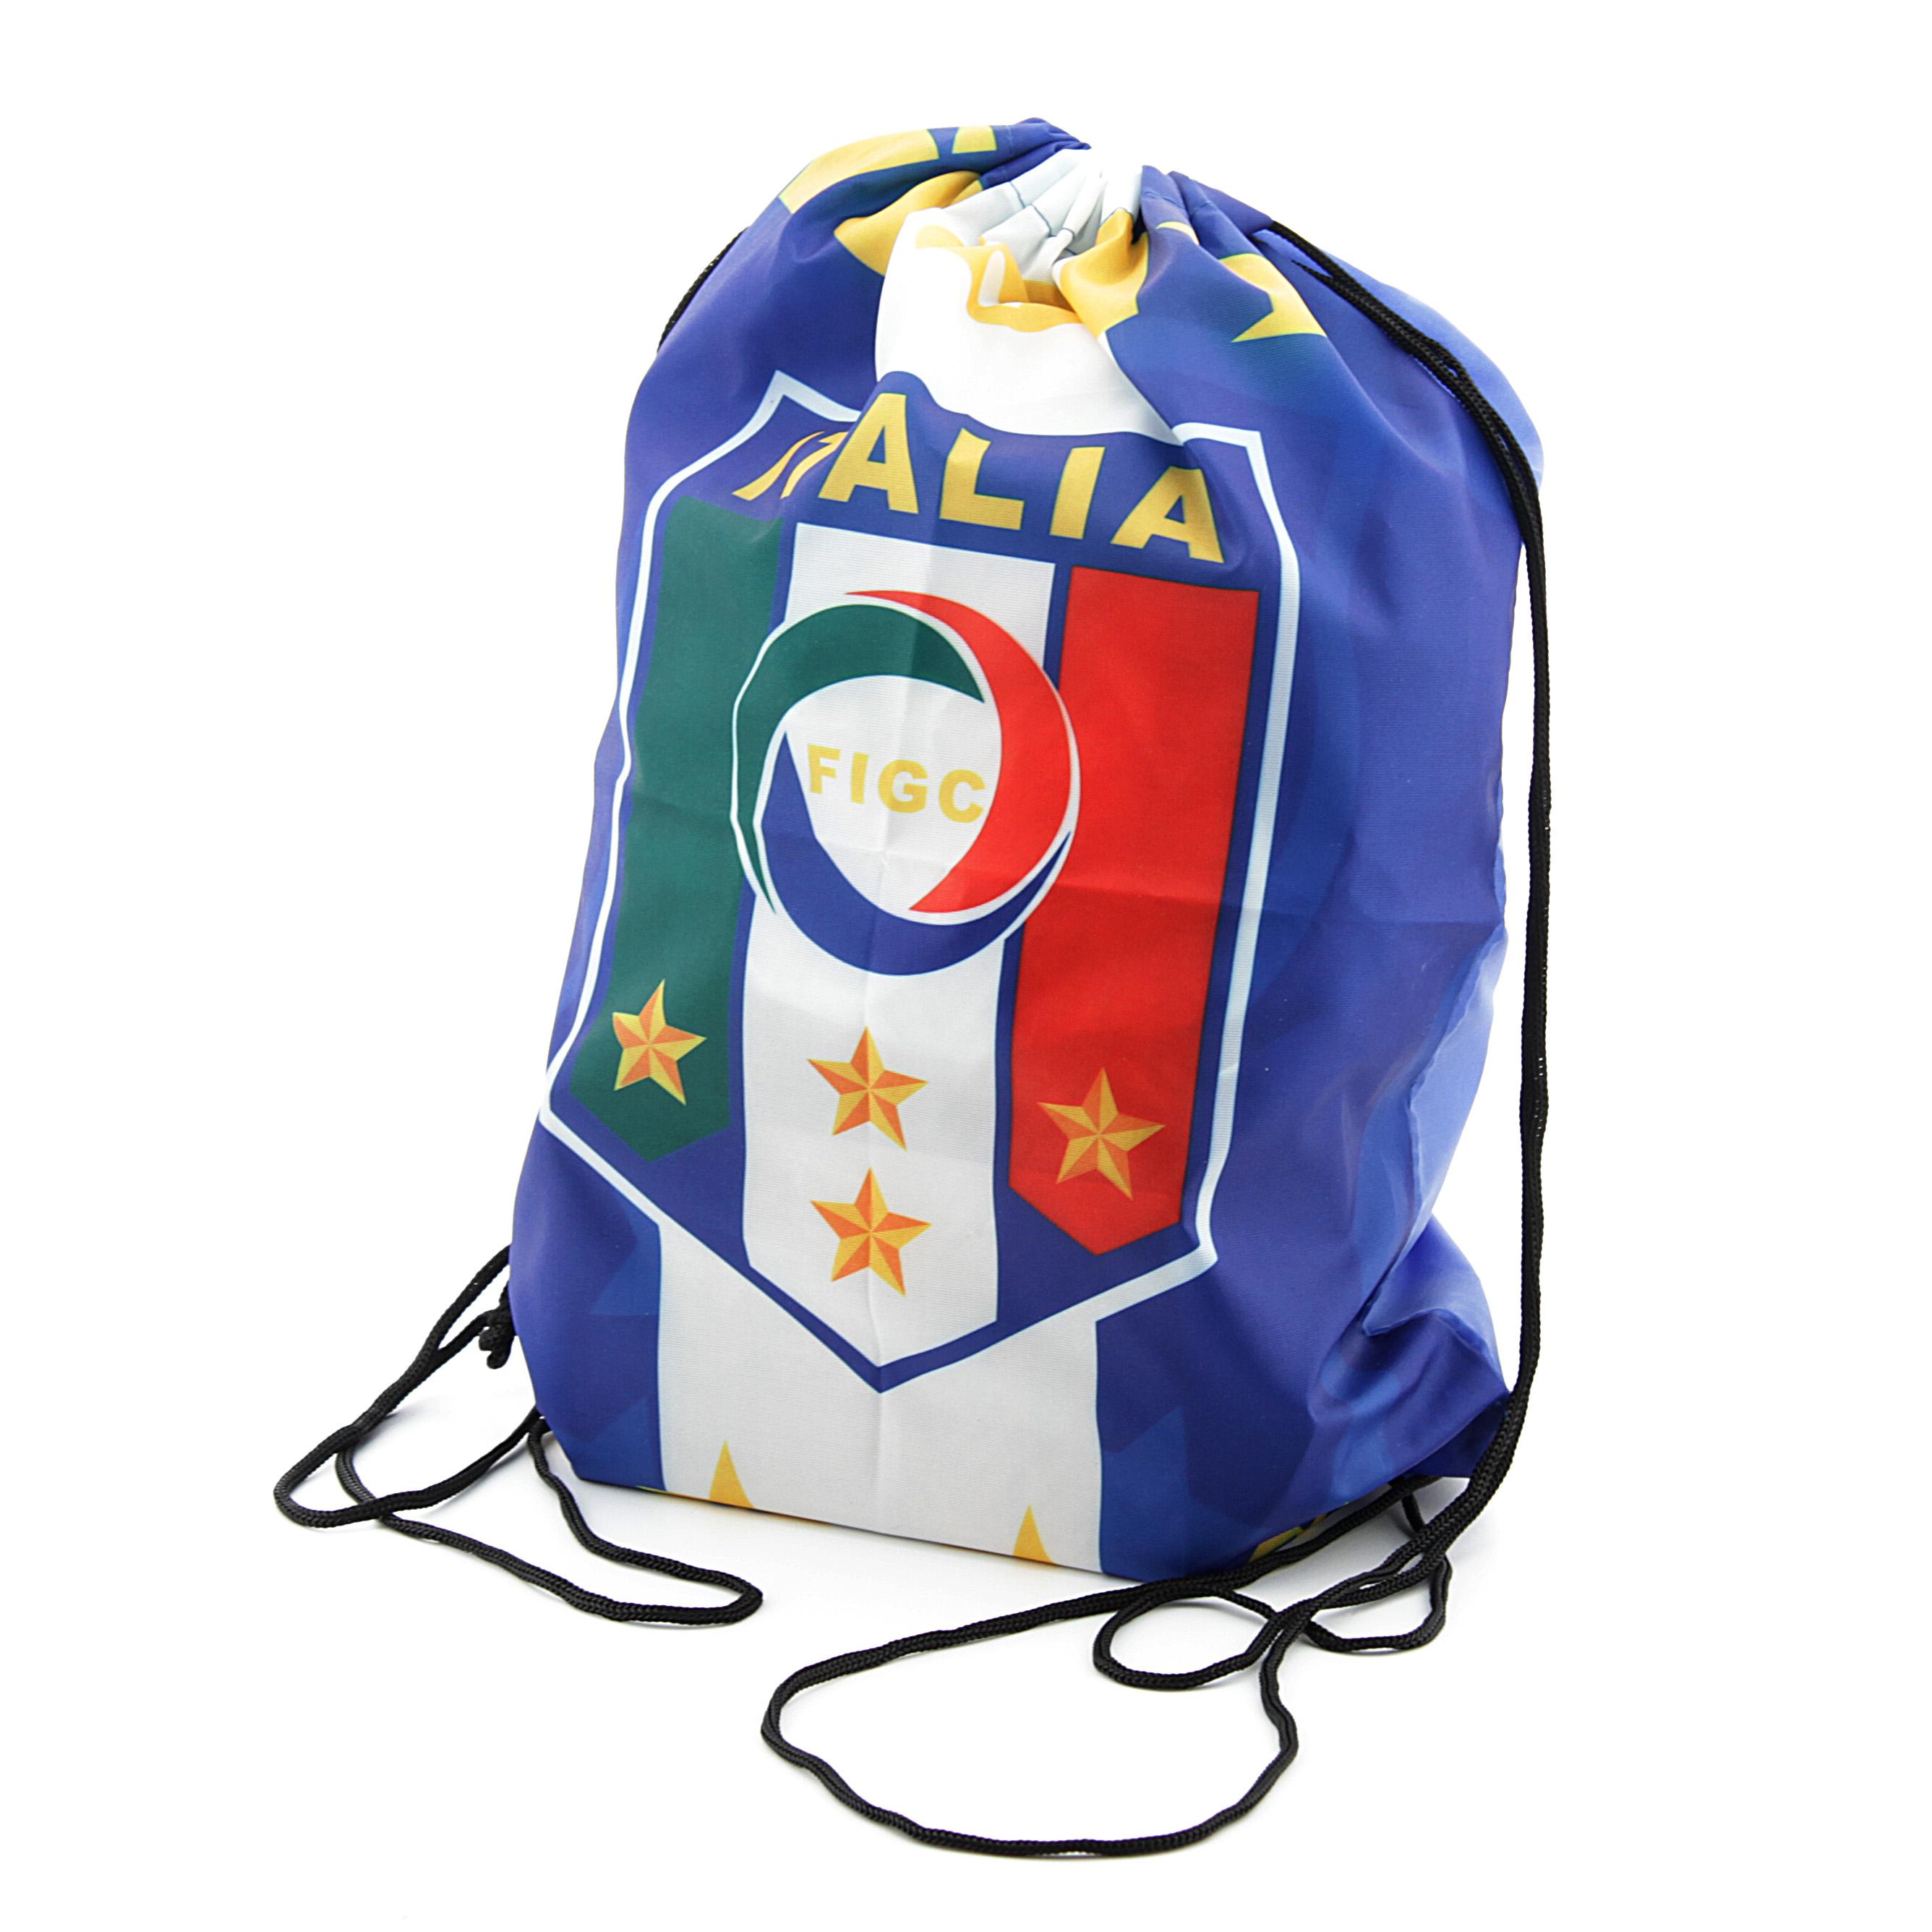 Футбольная сумка Italy